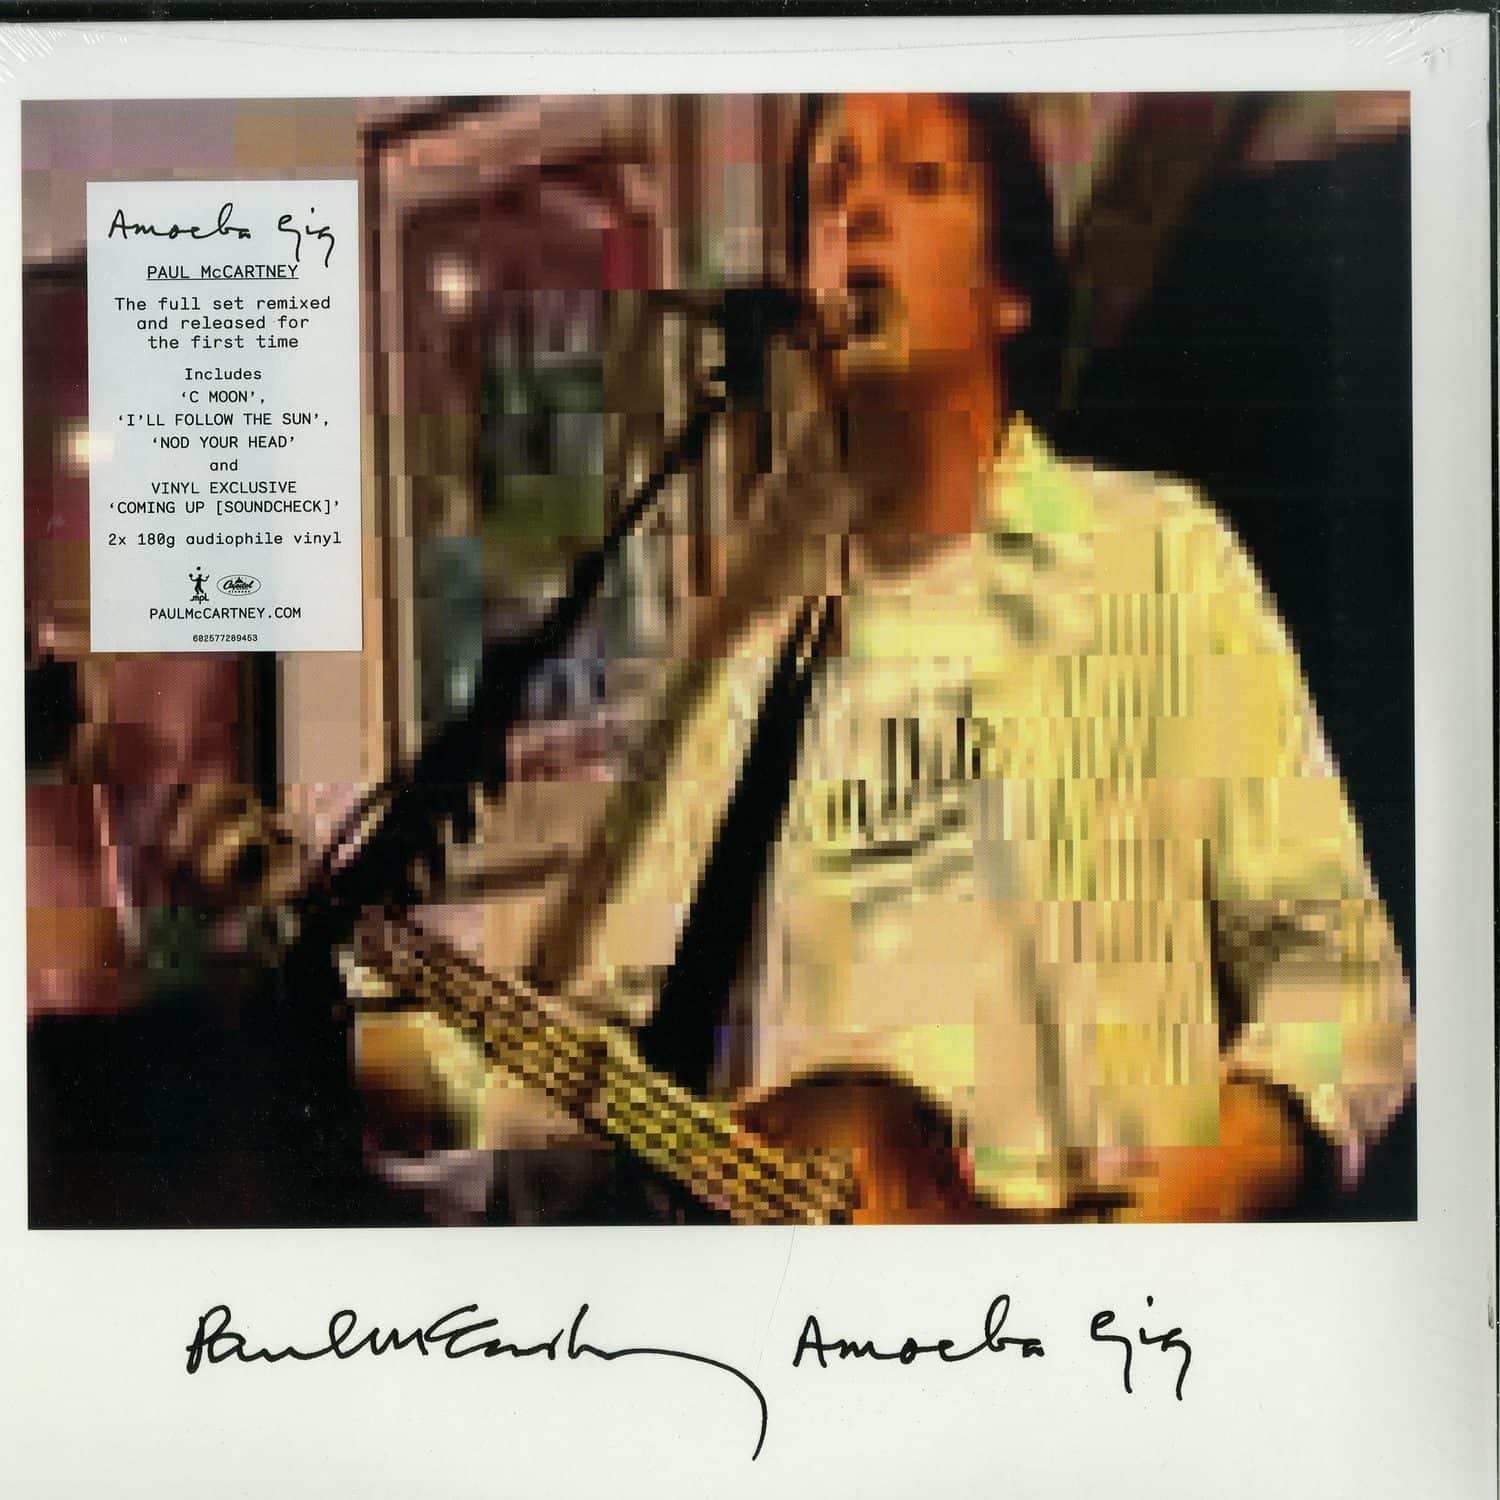 Paul McCartney - AMOEBA GIG 